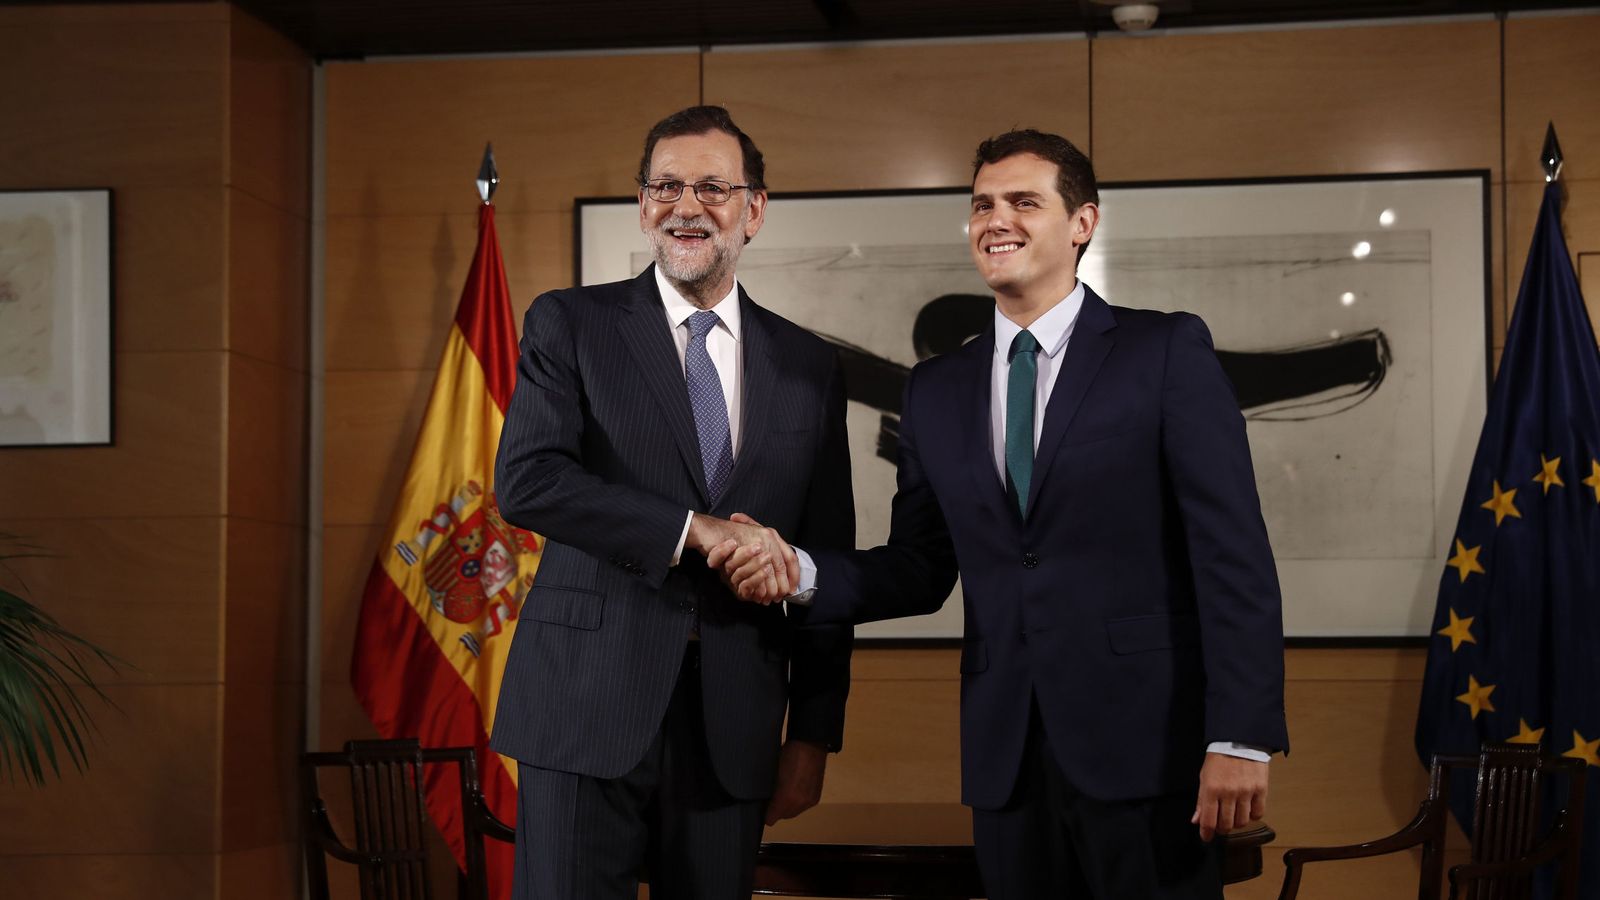 Foto: El presidente del Gobierno en funciones, Mariano Rajoy (i), y el líder de Ciudadanos, Albert Rivera, durte la entrevista que mantuvieron en el Congreso. (EFE)